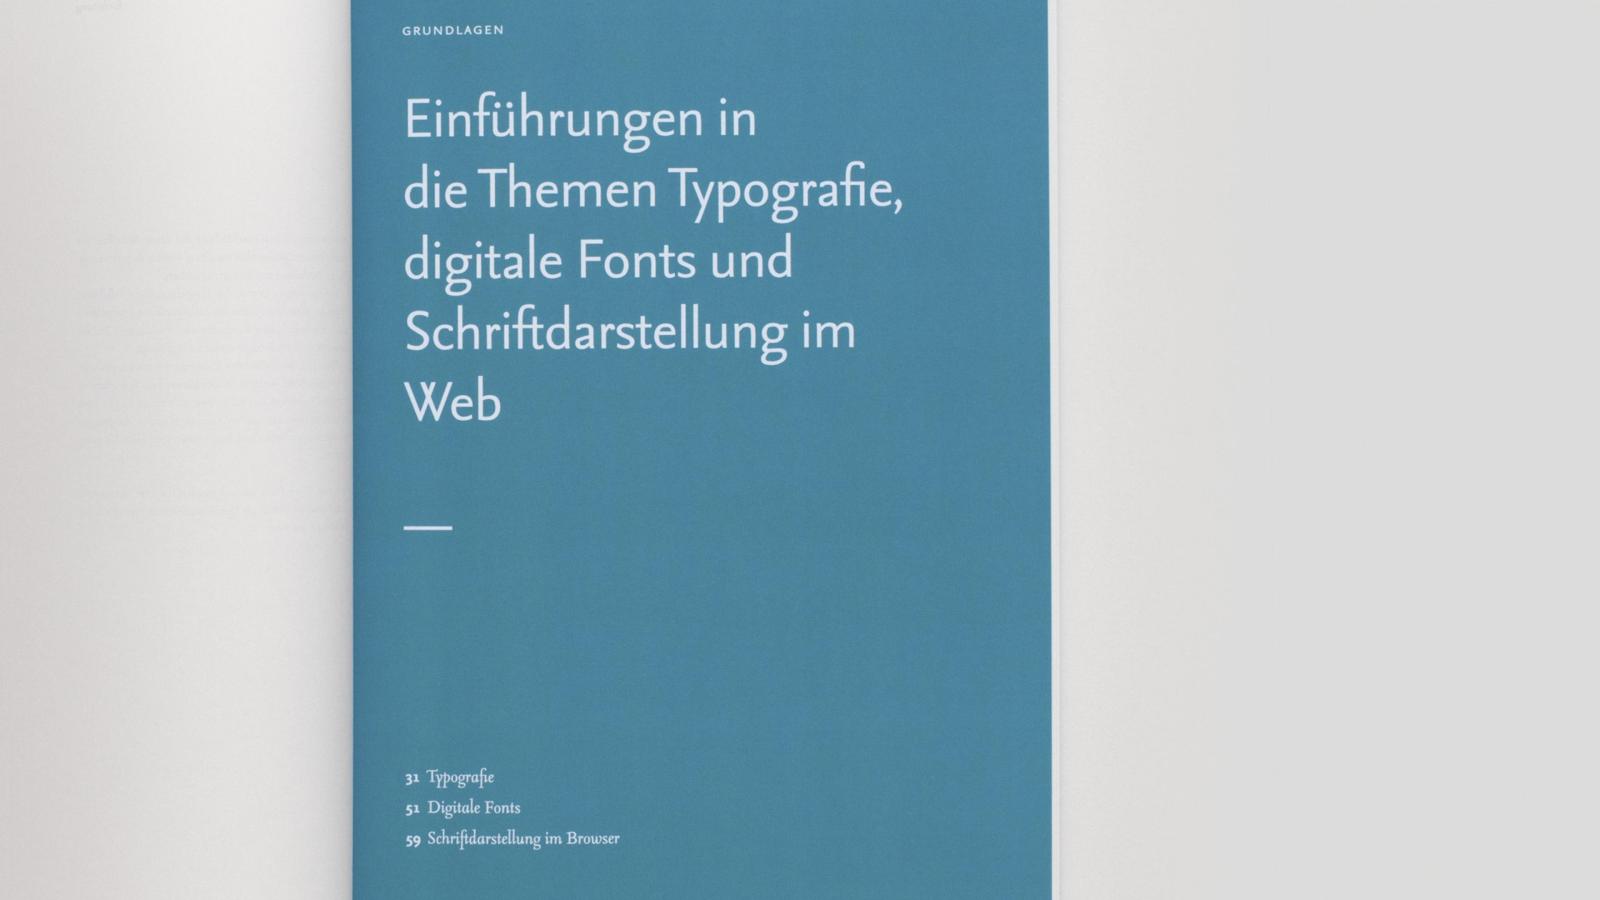 Ansicht einer Kapitelseite des Handbuchs. Der Titel des Kapitels lautet: Einführung in die Themen Typografie, digitale Fonts und Schriftdarstellung im Web.